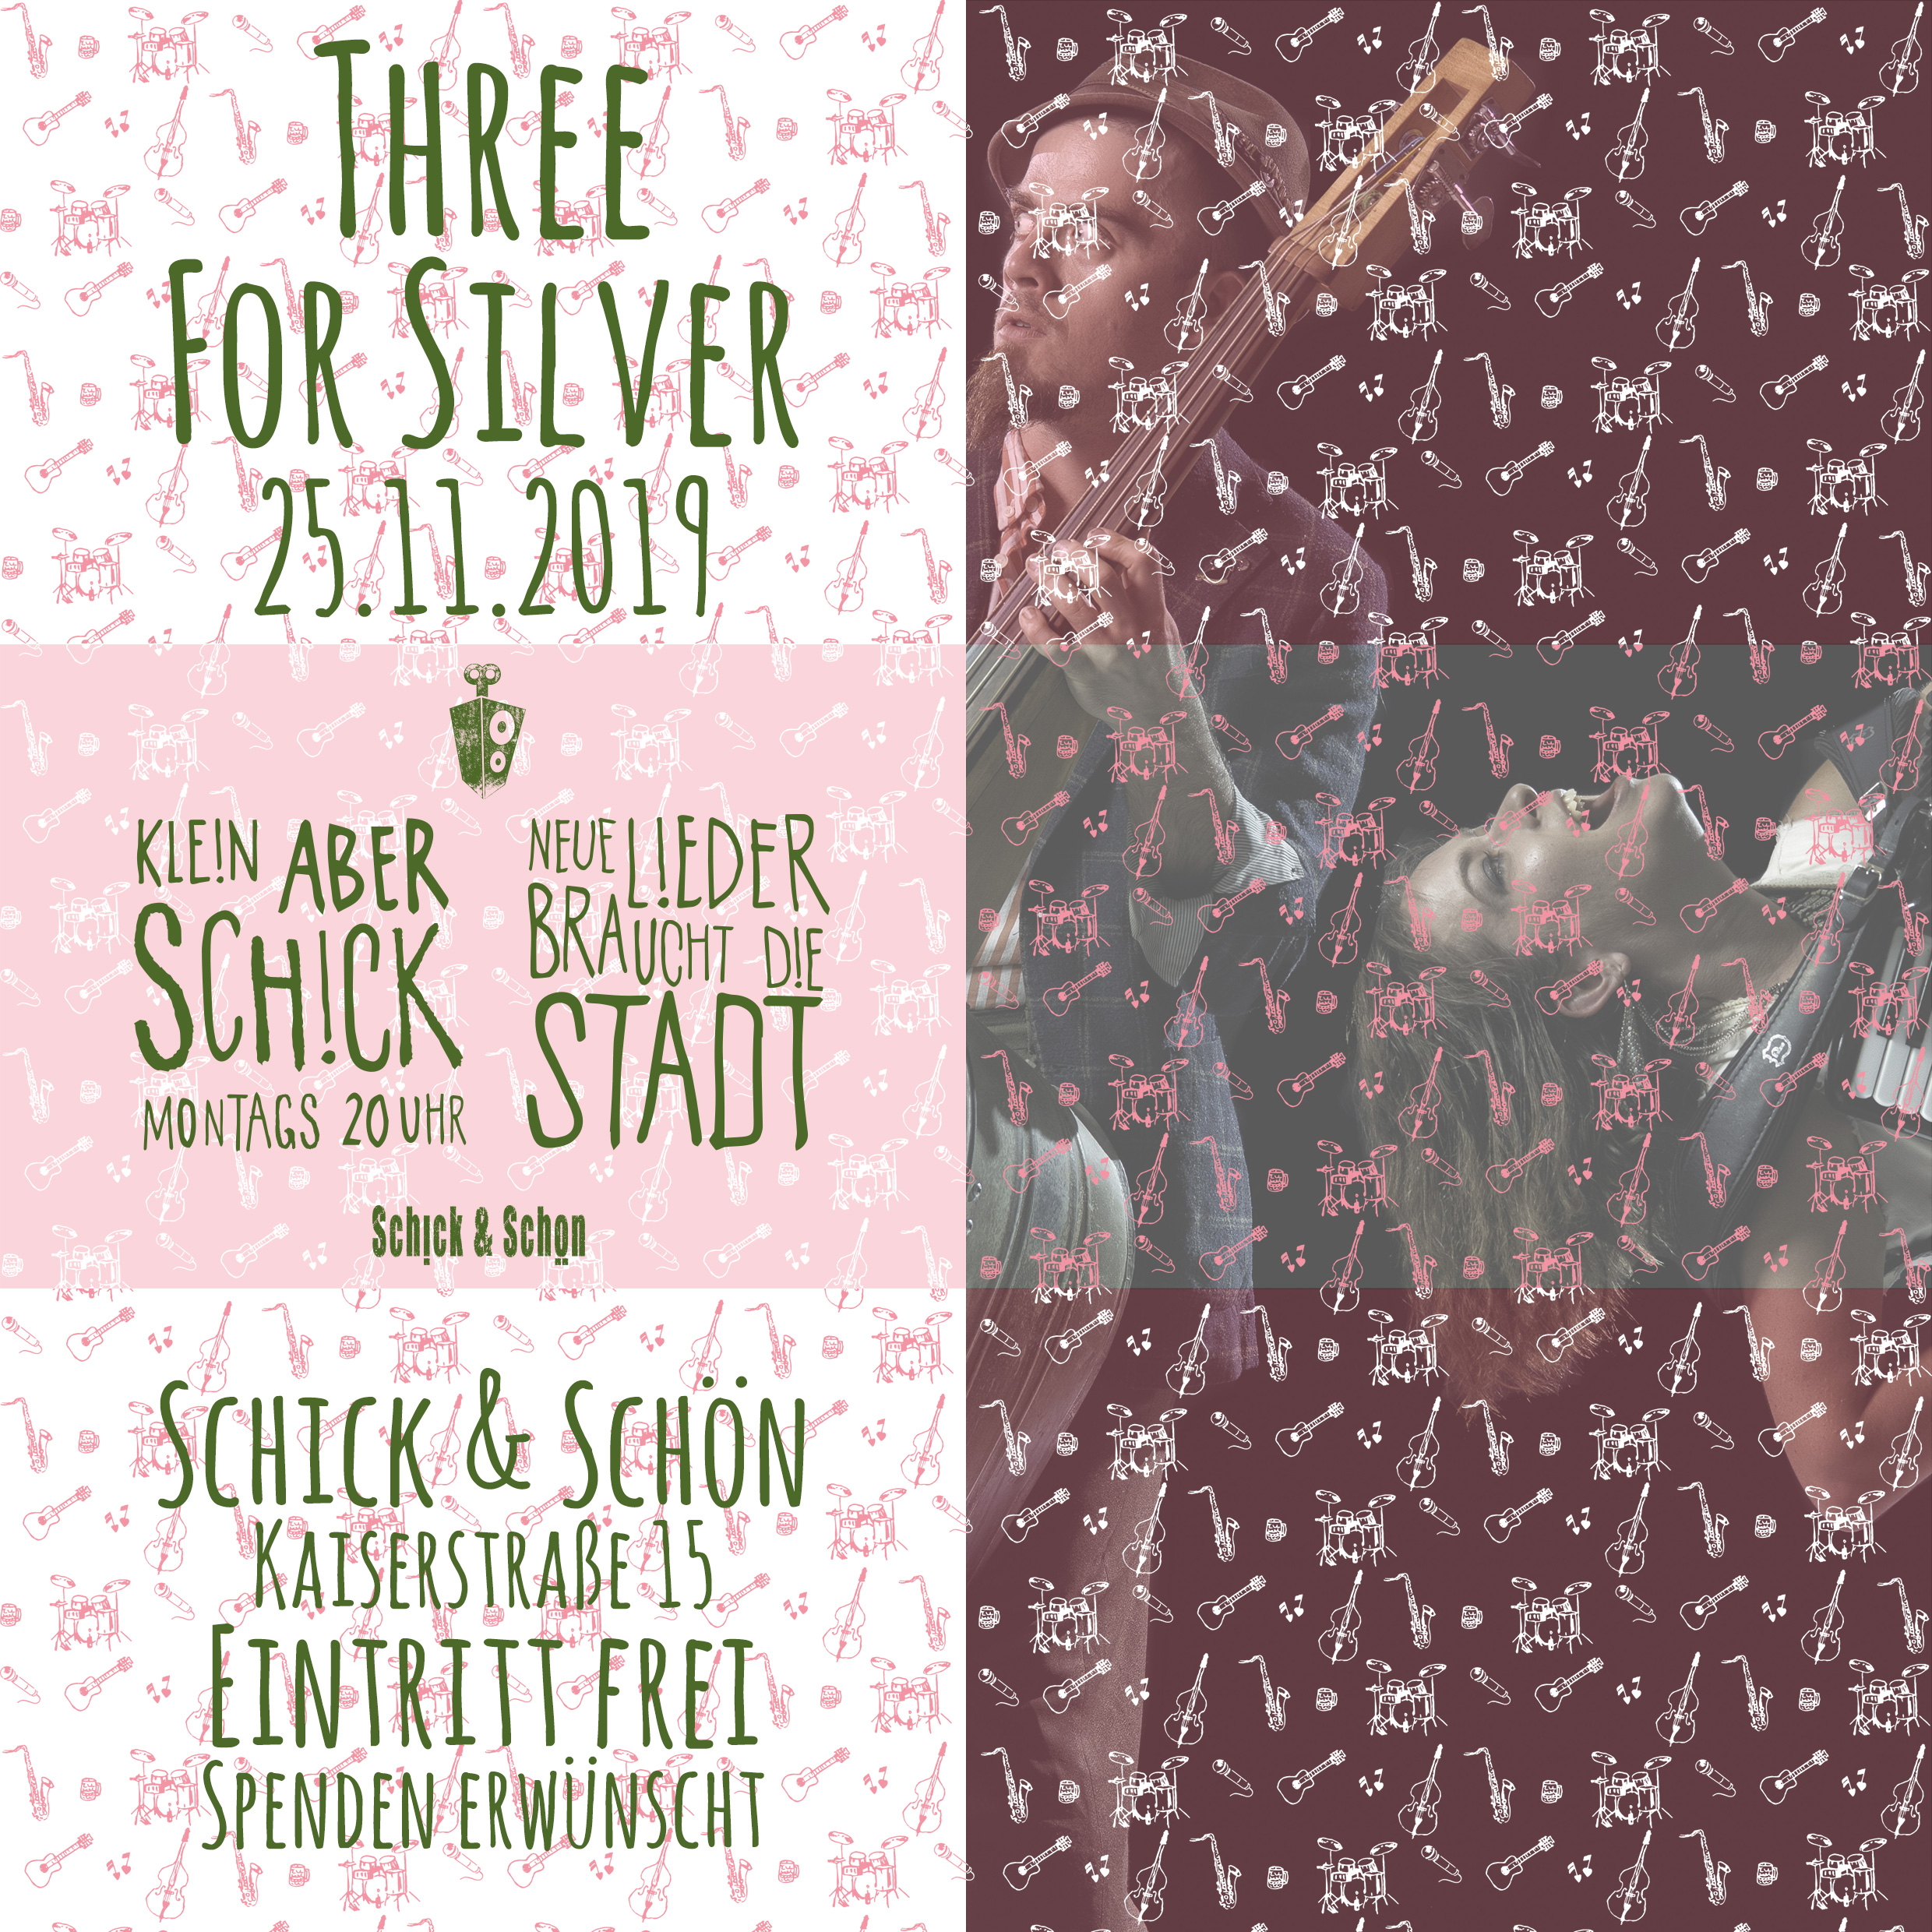 Klein-Aber-Schick-Immer-Montags-schick-und-schön-Mainz-Musikmaschine-Events-Veranstaltungen-Konzerte-Band-Bands-Buchen-Party-Feiern-Donnerstag-special-Three-For-Silver